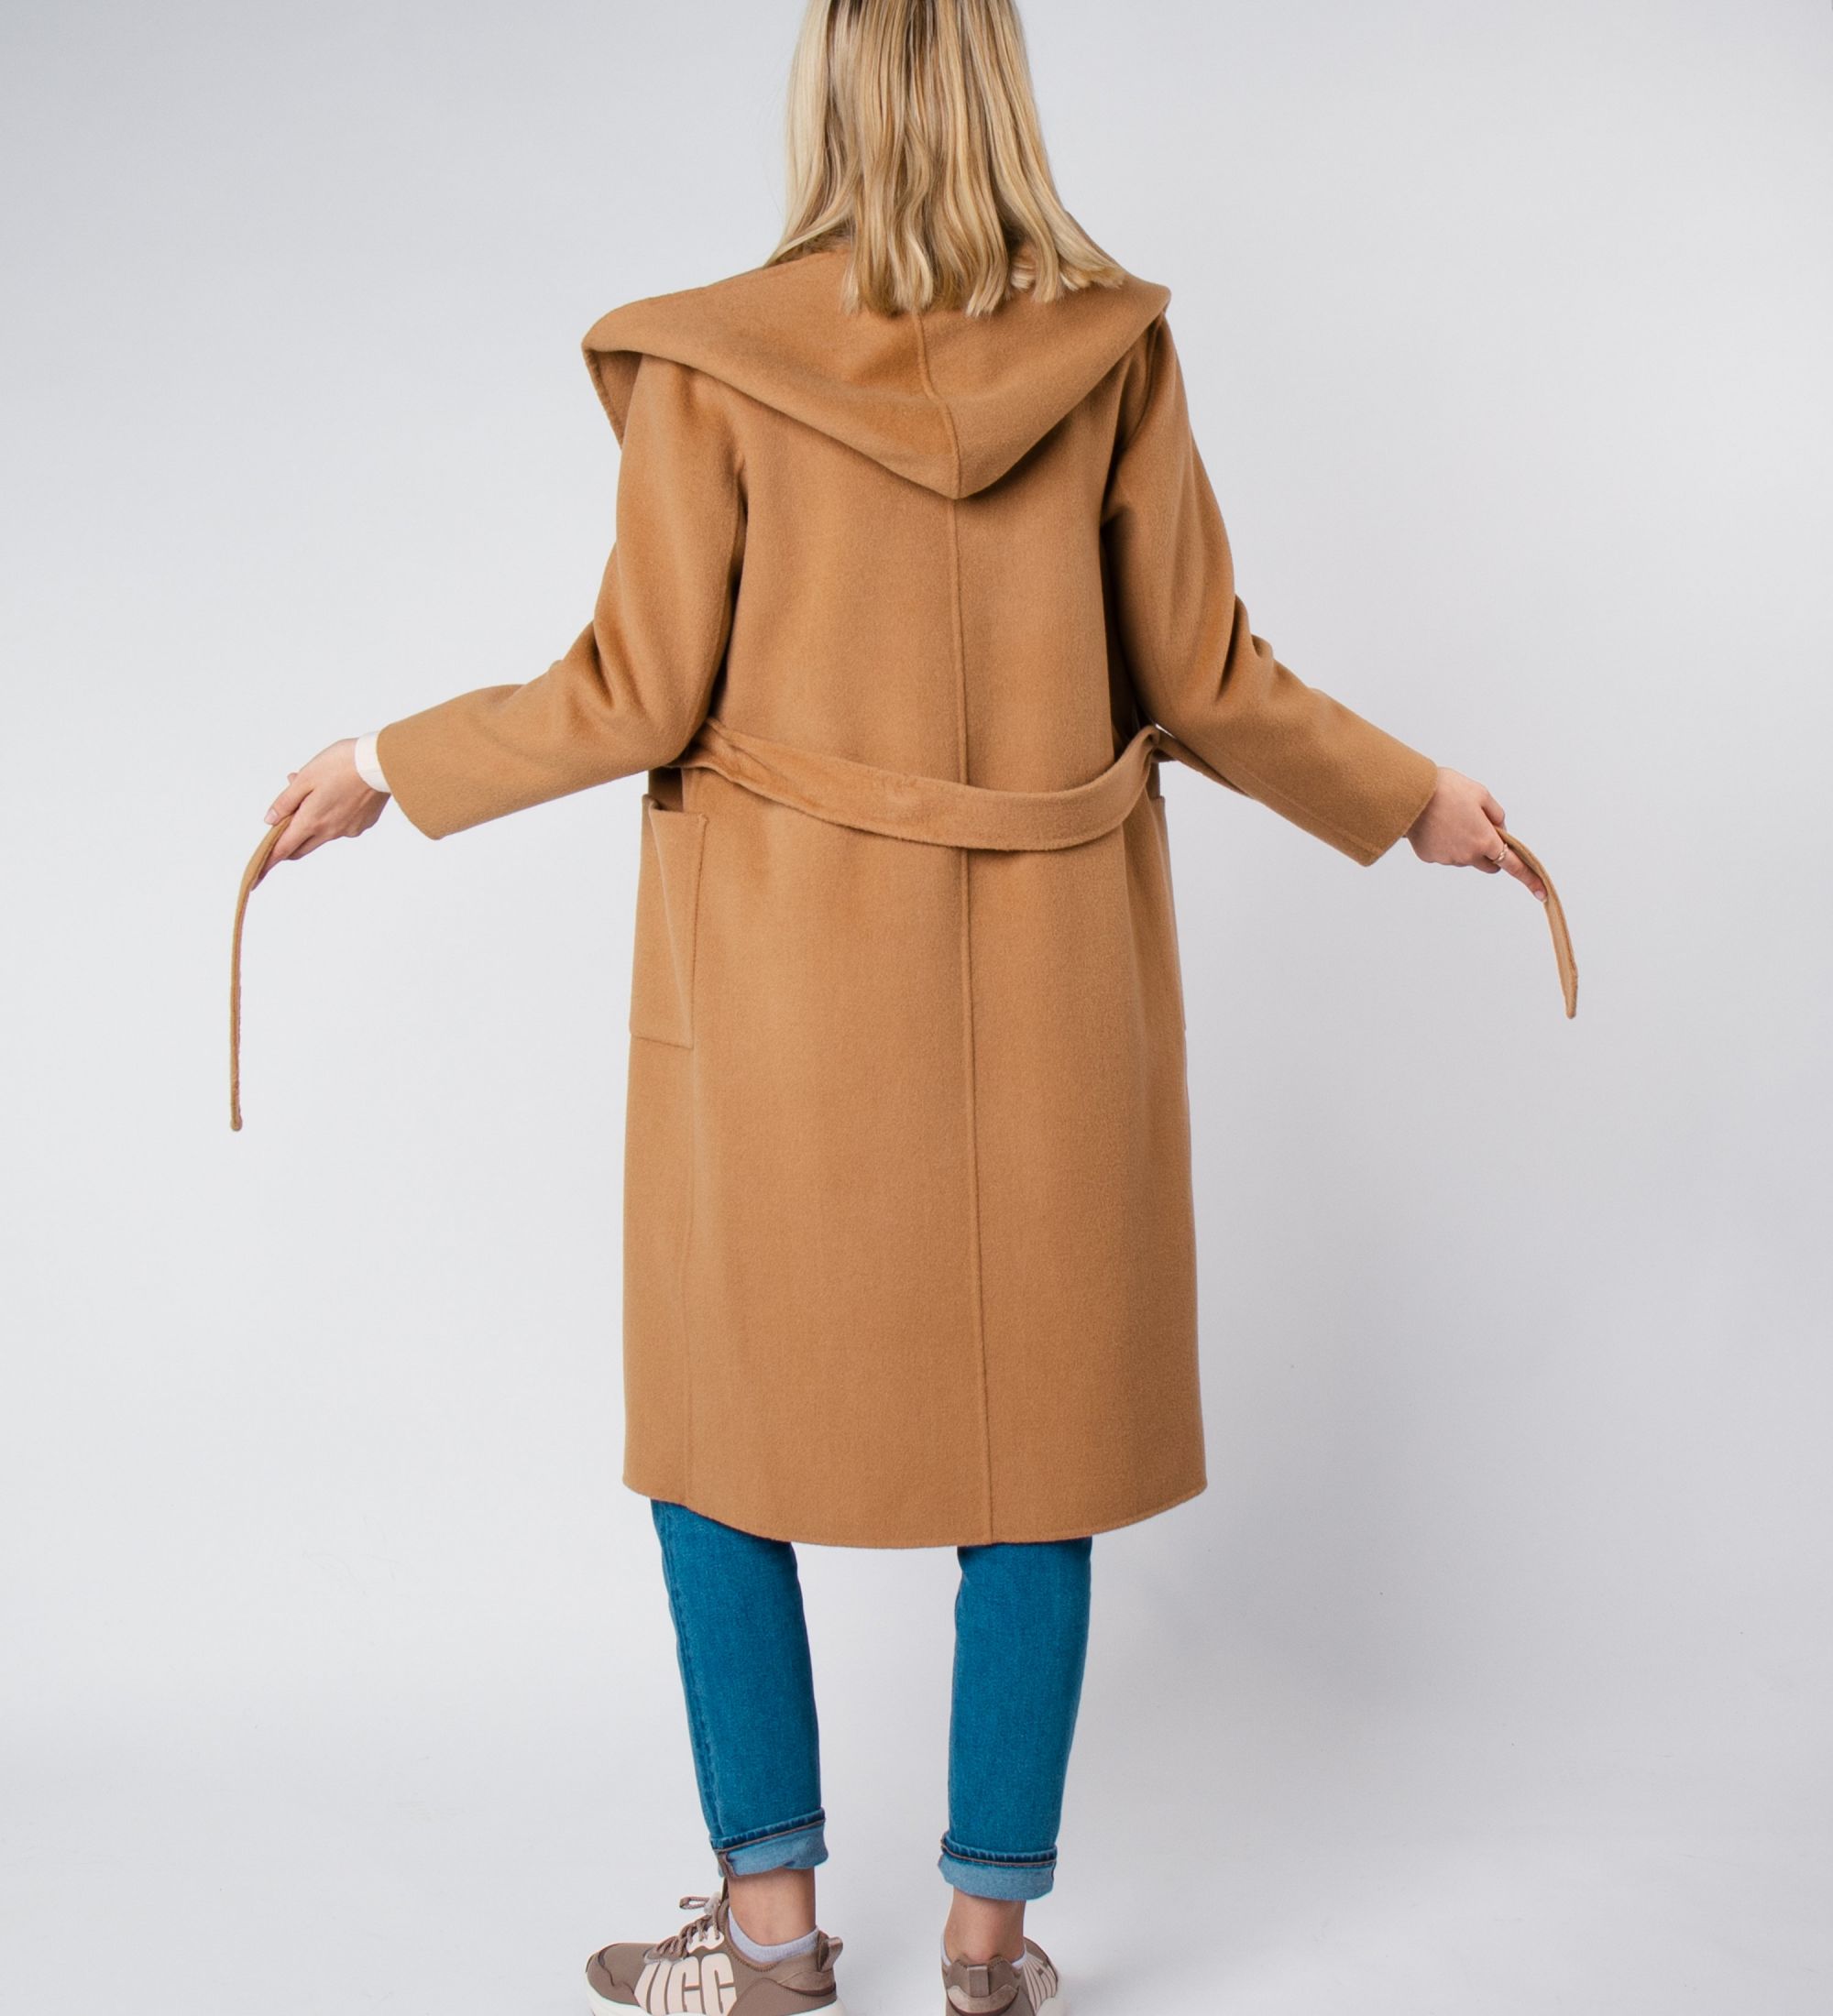 LEEZ Women Mid-length Belted Hooded Wool Coat